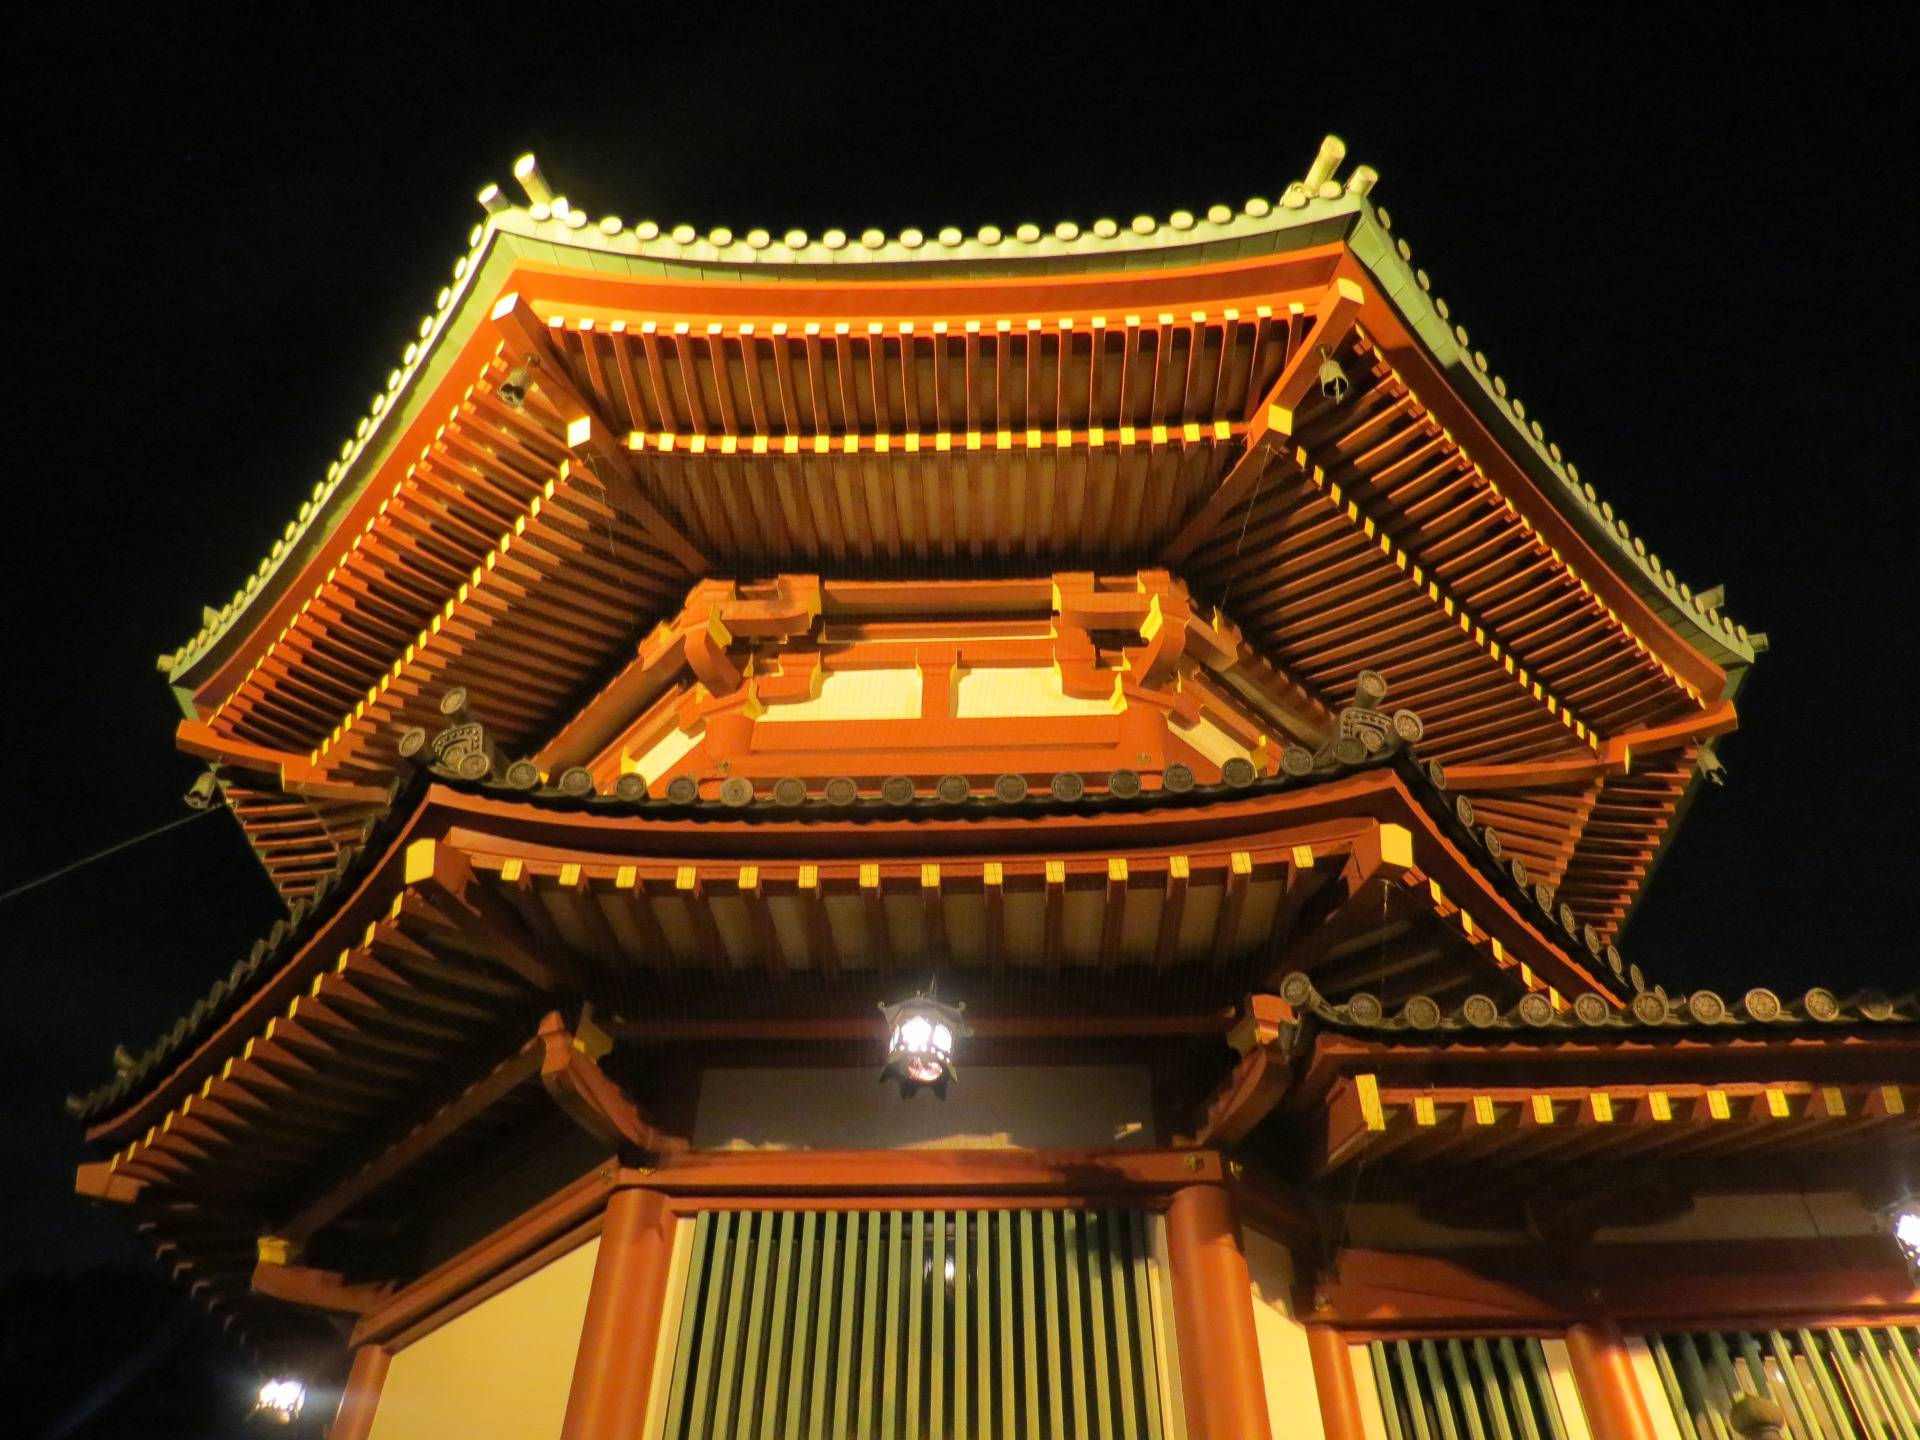 Night tour of the Buddhist Shinobazunoike Bentendo Temple in Tokyo